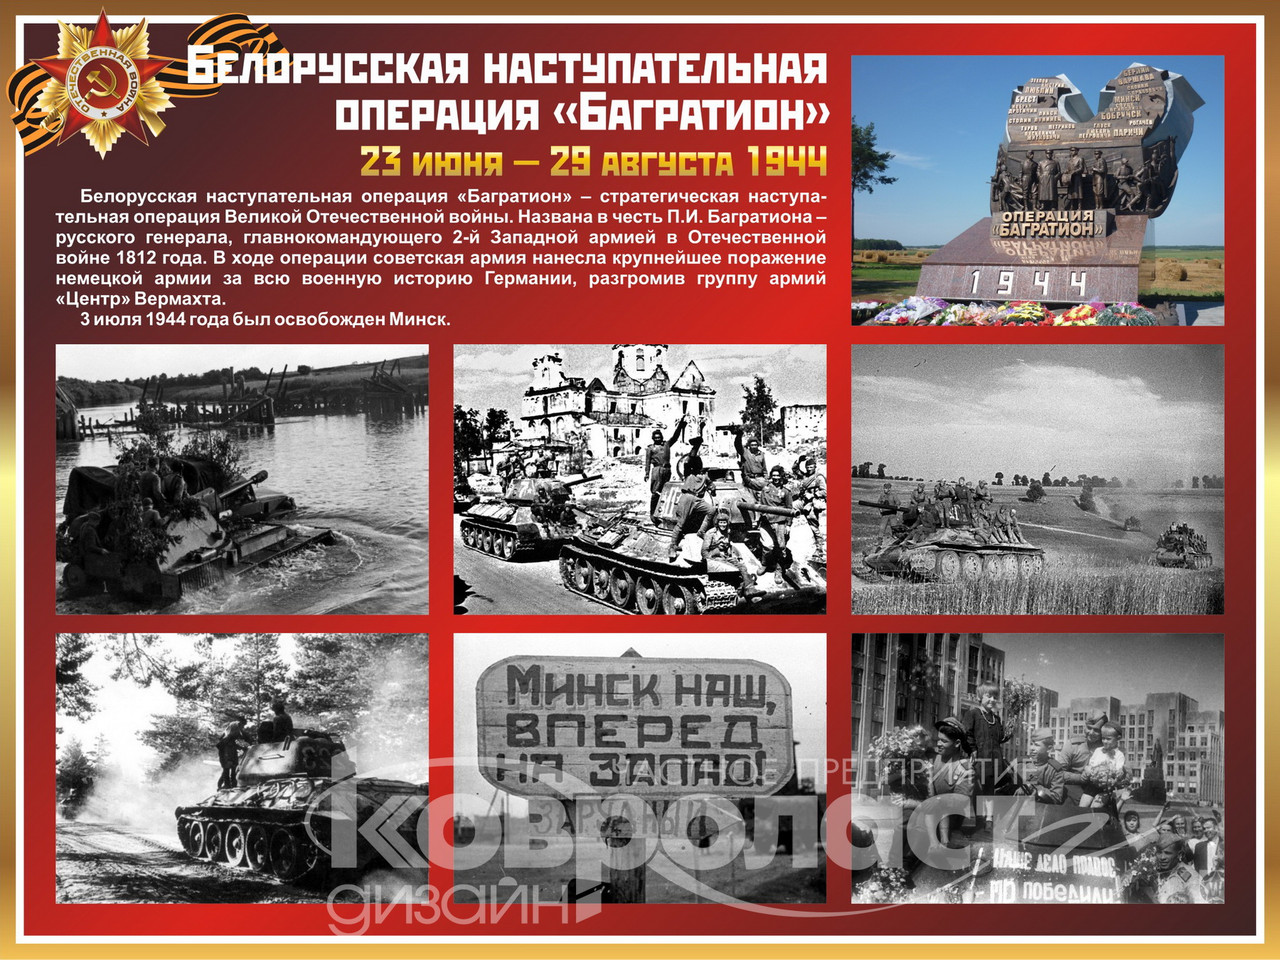 Стенд  "Белорусская наступательная операция "Багратион"